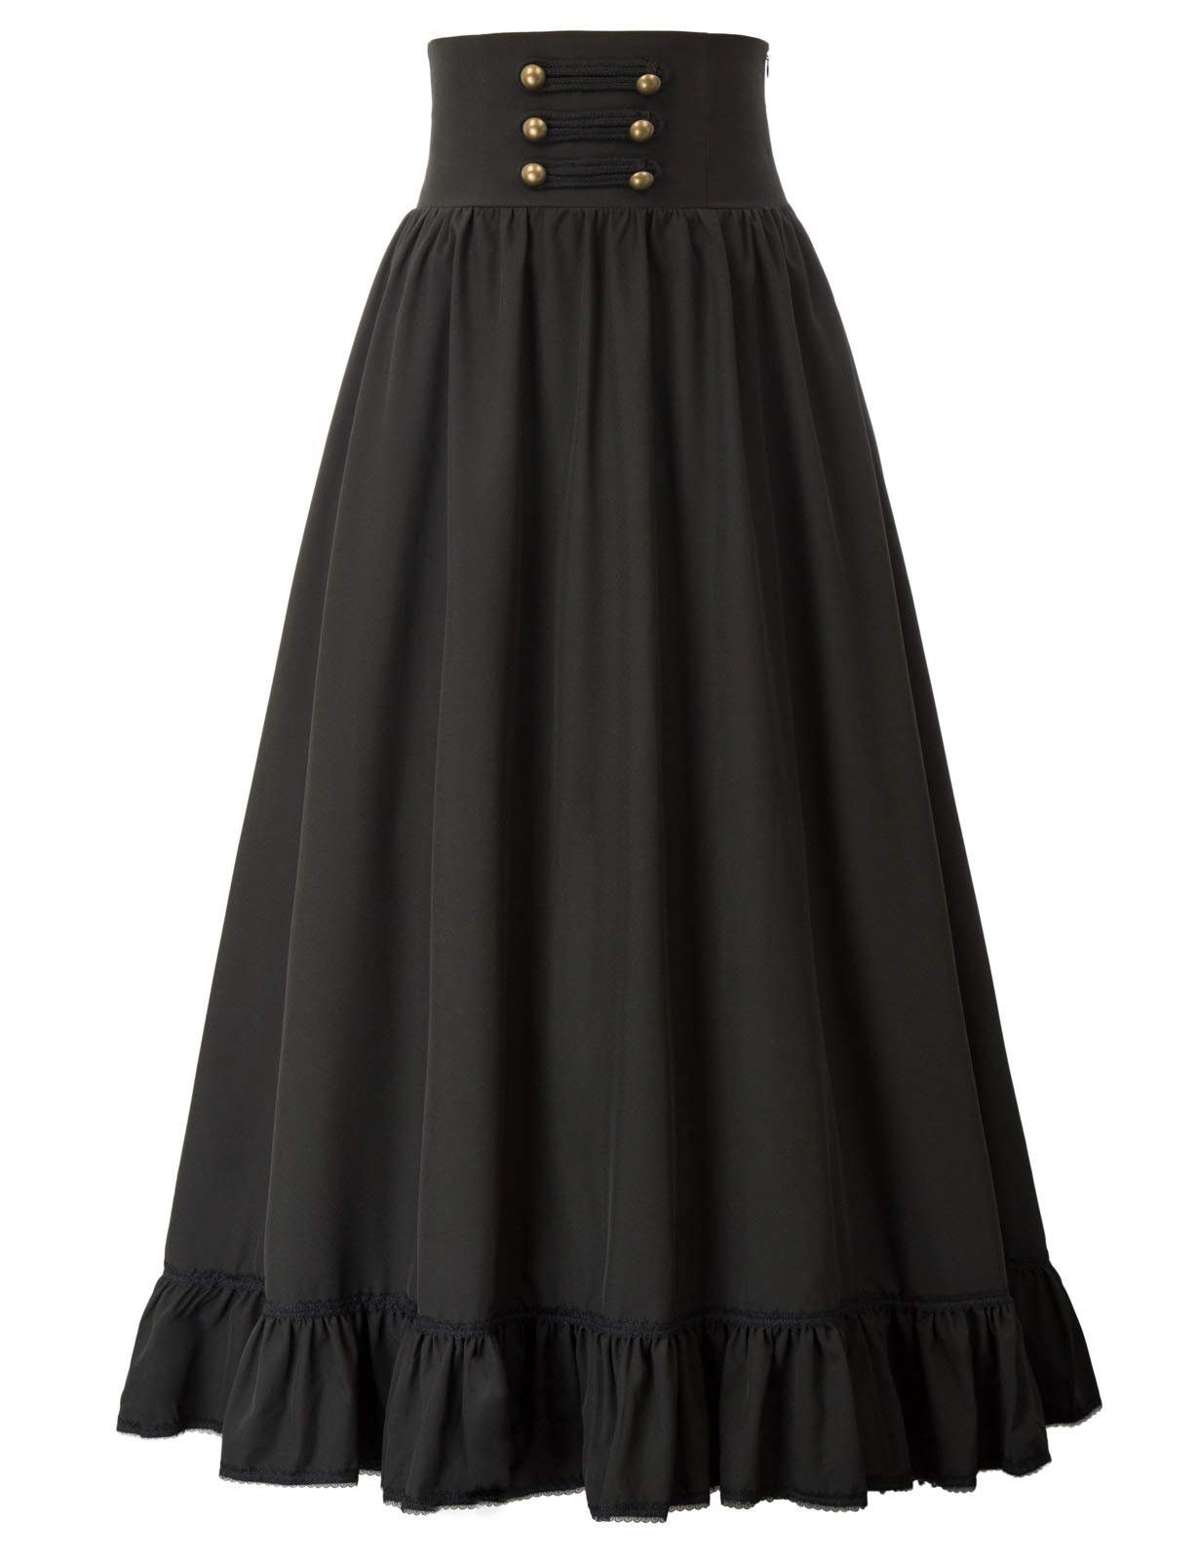 Юбка-трапеция, ретро-готическая кружевная юбка с кружевной талией